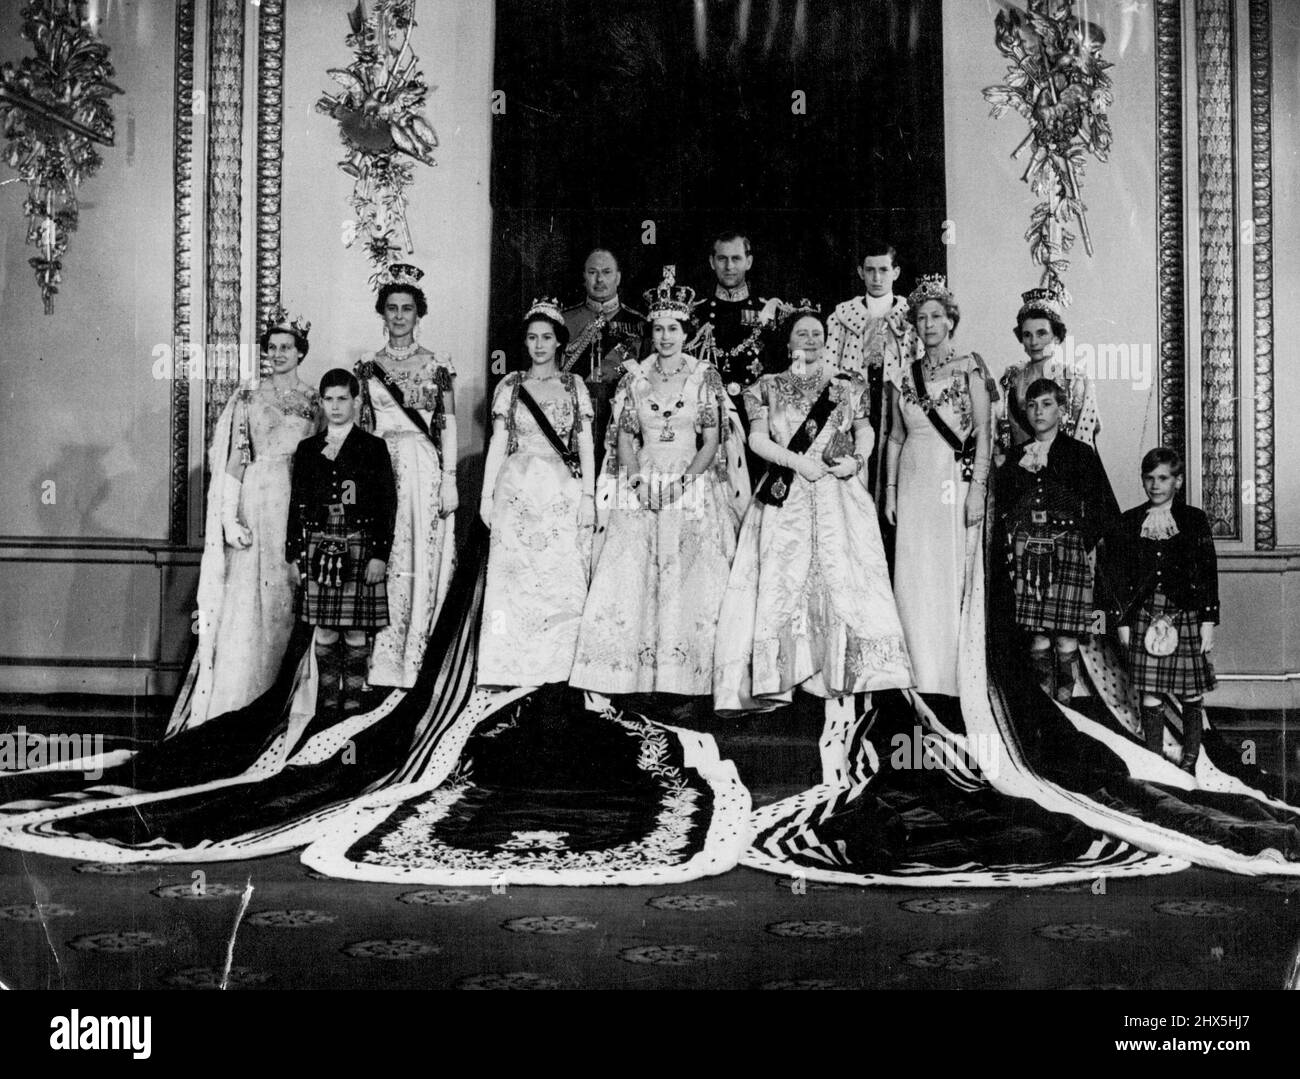 Famiglia reale nei loro abiti di Coronation -- la regina, che indossa la corona di Stato imperiale e gli abiti di Coronation, con altri membri della famiglia reale a Buckingham Palace dopo la cerimonia di Coronation. Da sinistra a destra: Principessa Alexandra di Kent; Principe Michele di Kent; la duchessa di Kent; Principessa Margaret; il Duca di Gloucester; la Regina; il Duca di Edimburgo; la Regina Elisabetta; la Regina Madre; il giovane Duca di Kent; la Principessa reale; la Duchessa di Gloucester; Il Principe William e il Principe Richard di Gloucester. La principessa Margaret (a destra della regina) è fotografata con altri membri di Foto Stock